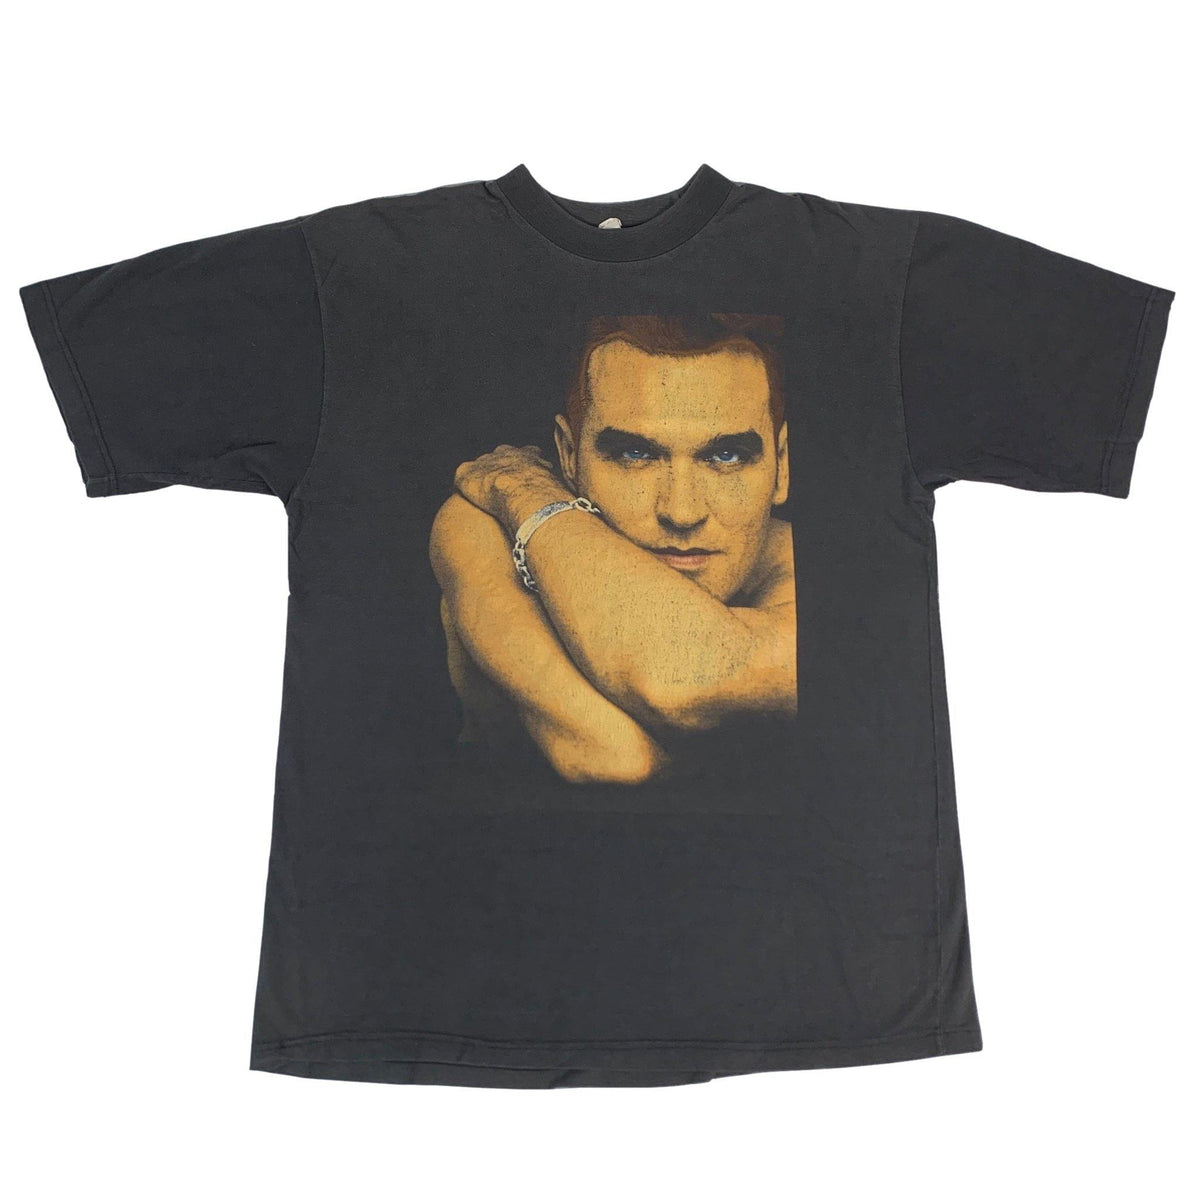 Vintage Morrissey &quot;Glamorous Glue&quot; Tour T-Shirt - jointcustodydc